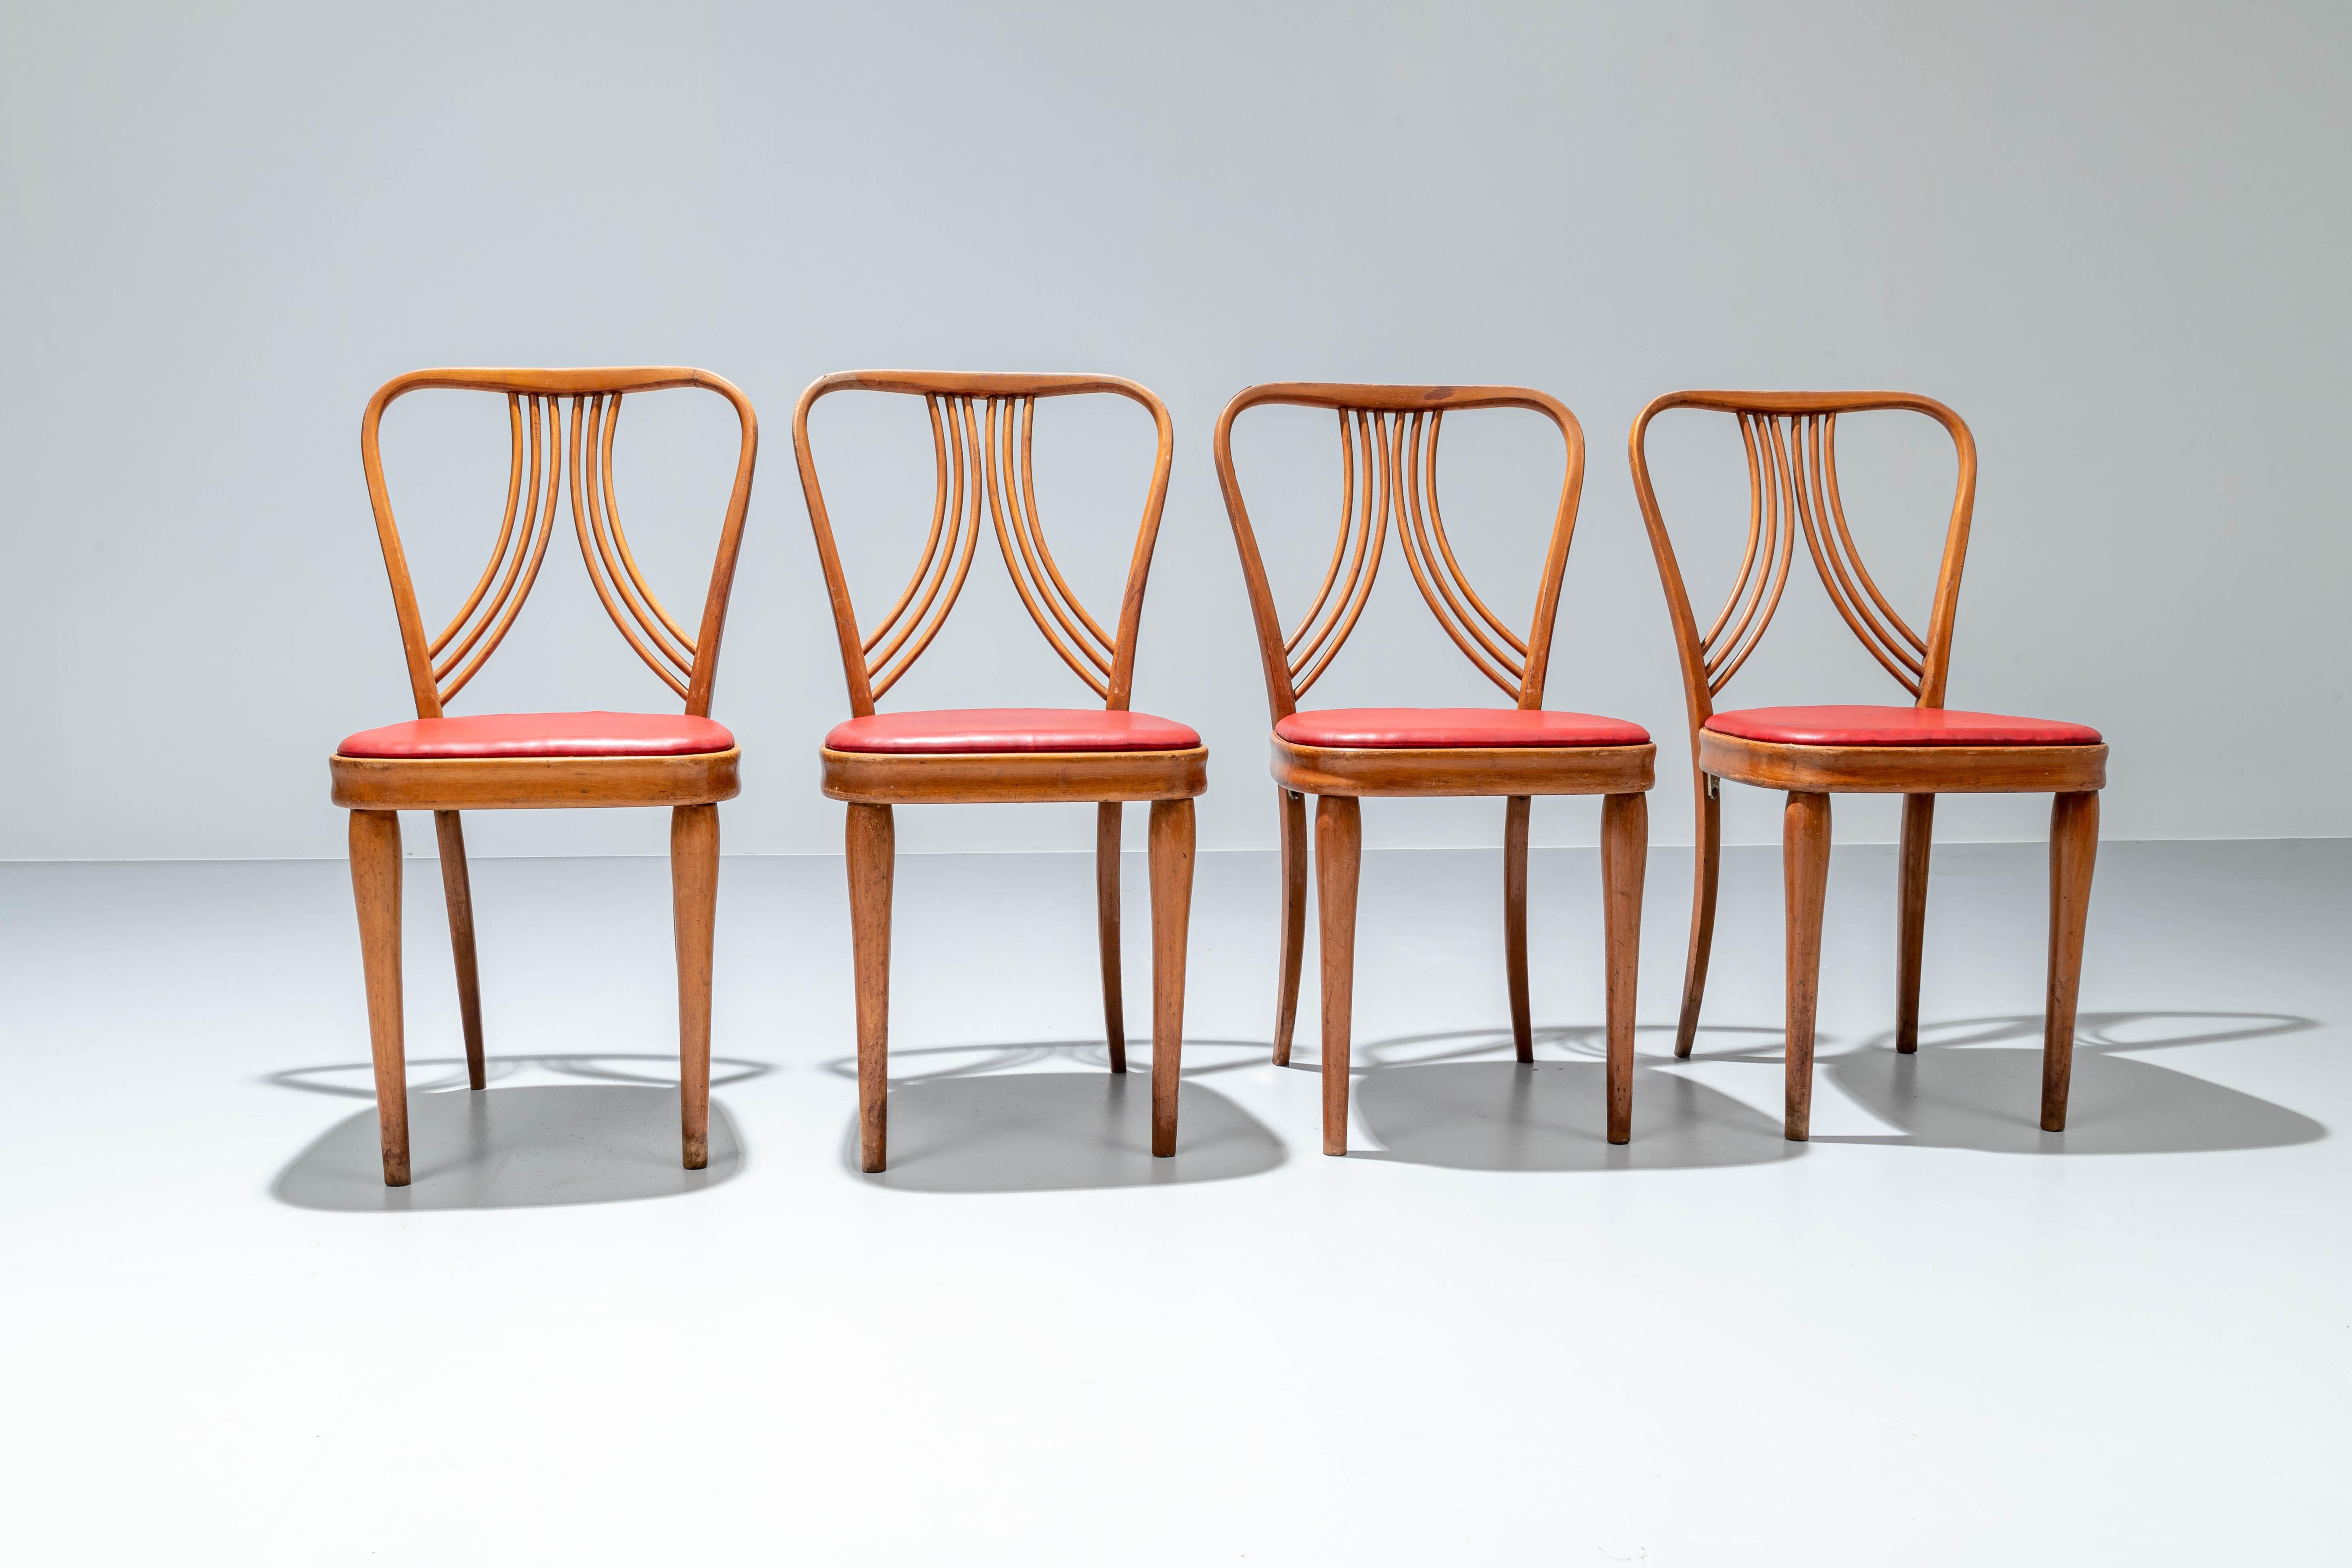 Ensemble de 4 chaises de salle à manger en bois blond et faux cuir rouge. 

La grâce italienne à son meilleur. La combinaison du hêtre blond et du similicuir rouge donne aux chaises un sentiment chaleureux et romantique. Les chaises ont beaucoup